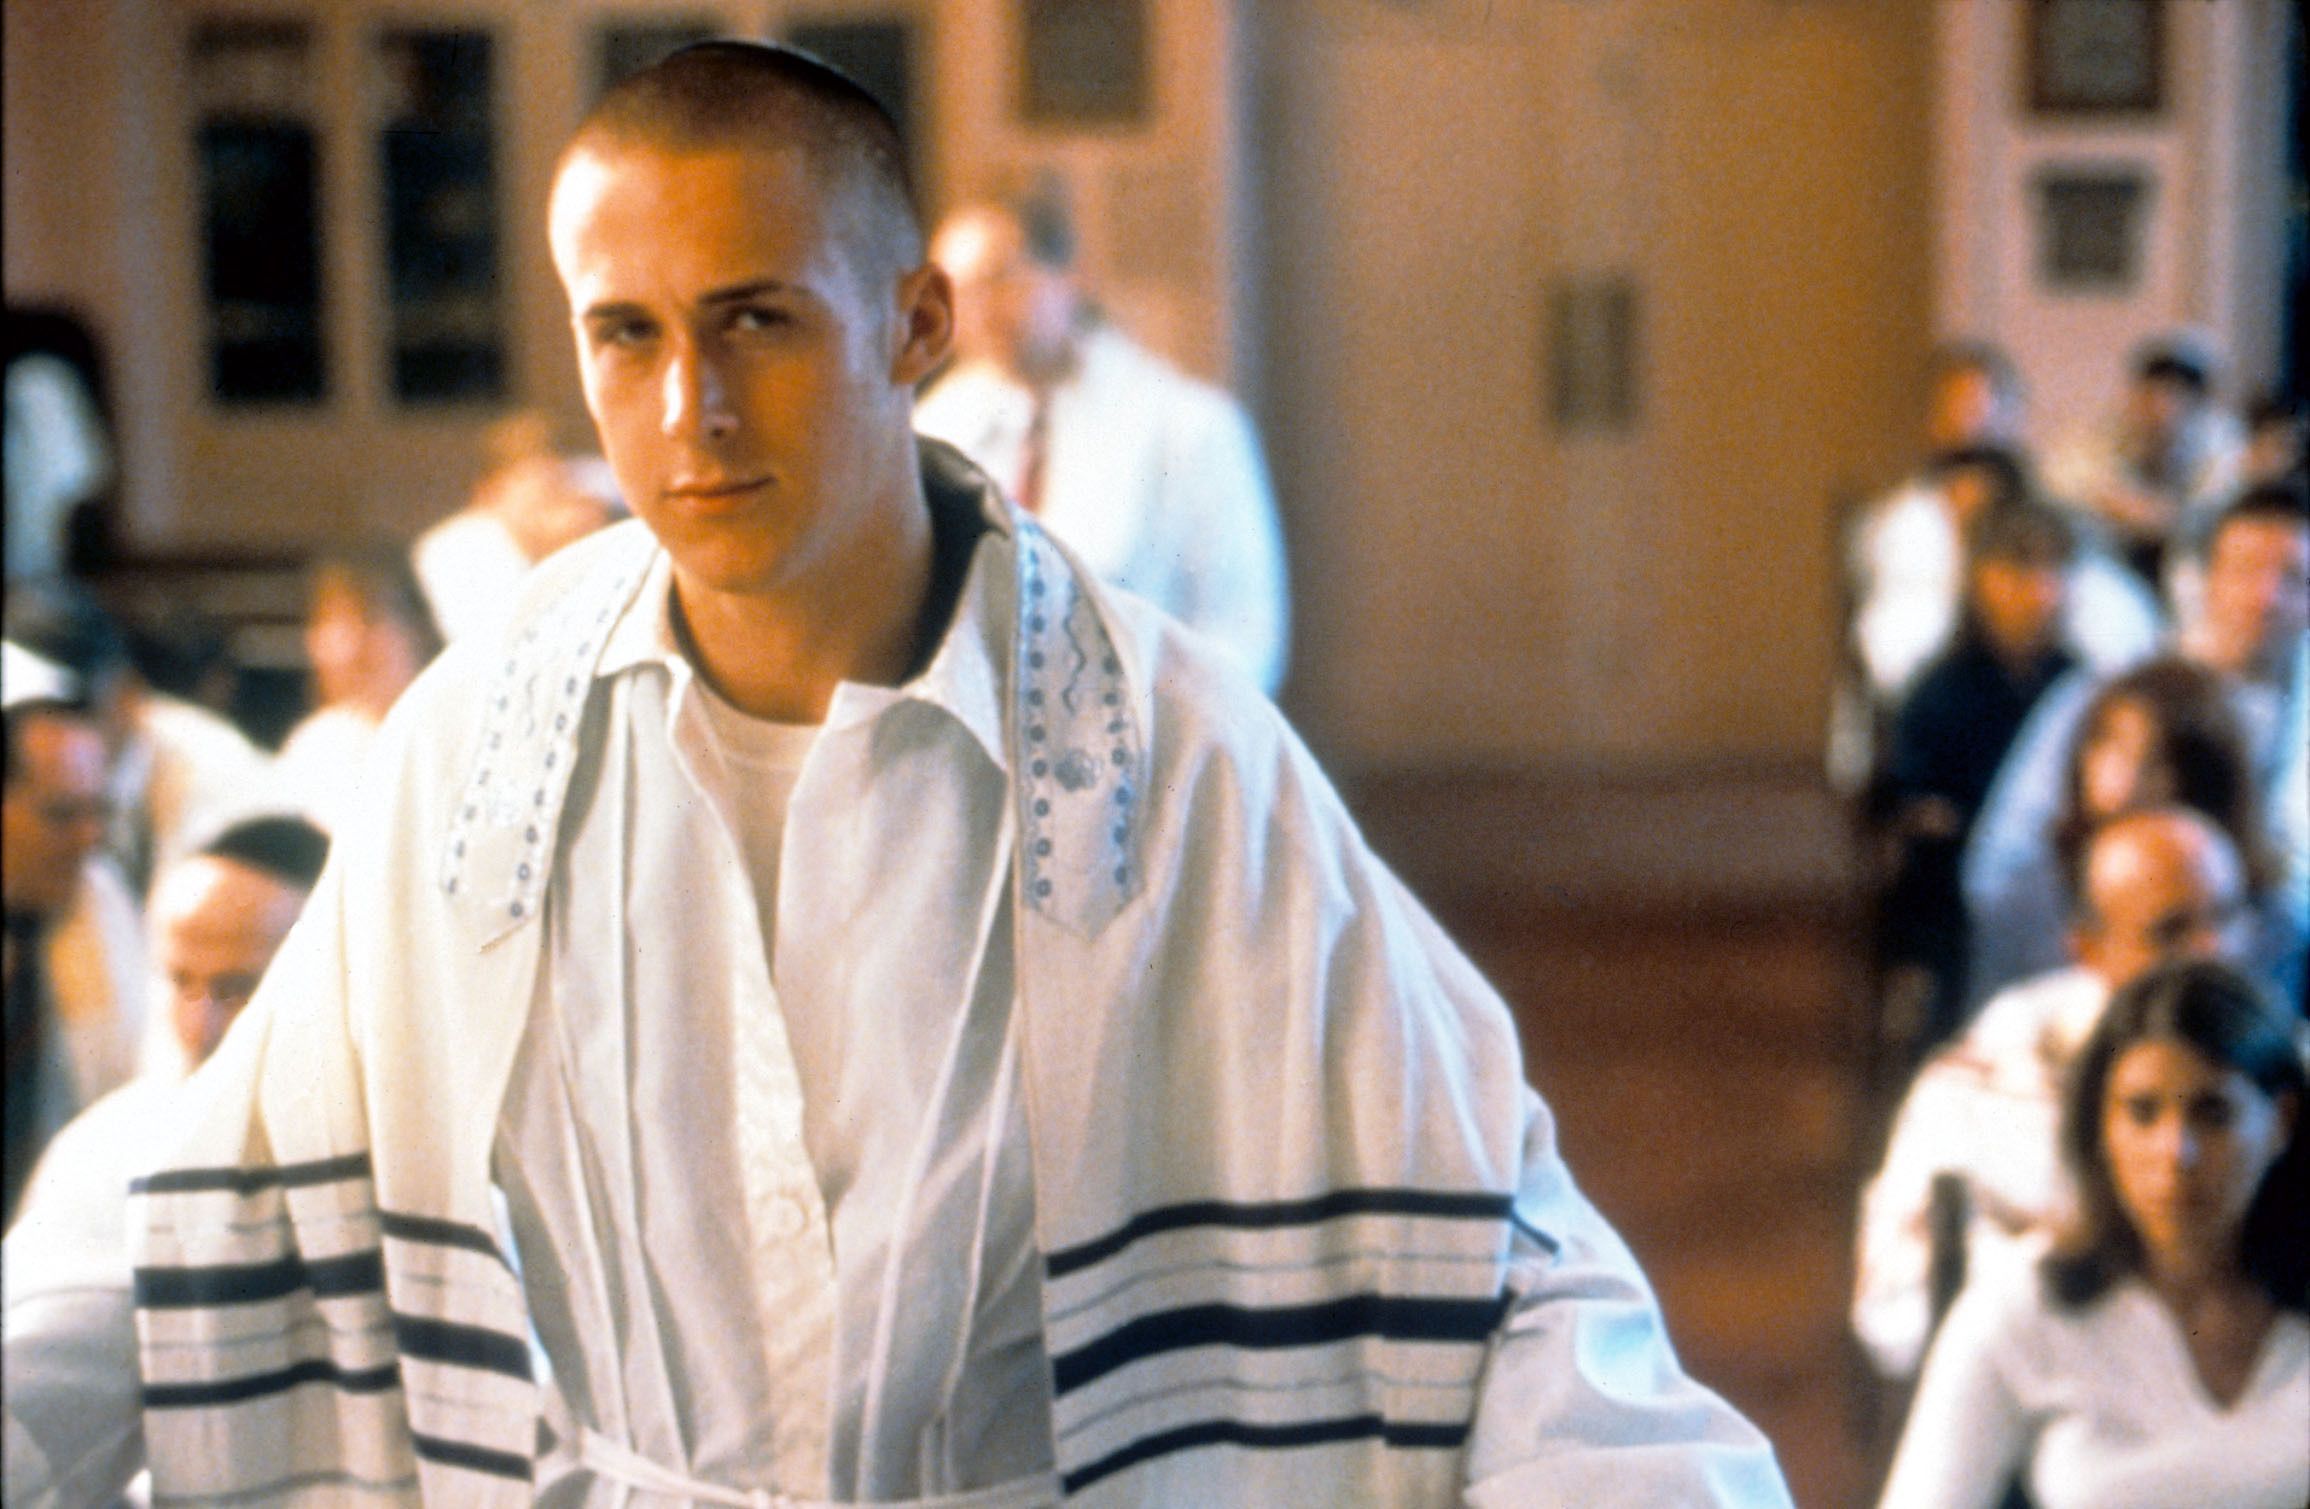 Inside a Skinhead (2001): Ryan Gosling spielt einen jungen US-amerikanischen Juden, der sich von seiner Religion und Herkunft abwendet und zu einem glühenden Neo-Nazi und Antisemiten wird. Doch als er mit anderen Skinheads einen Anschlag auf eine Synagoge plant, kommen ihm Zweifel. Der Film basiert auf der Geschichte von Daniel Burros, einem Juden, der in den 1960ern Mitglied der American Nazi Party und des Ku-Klux-Klan war.